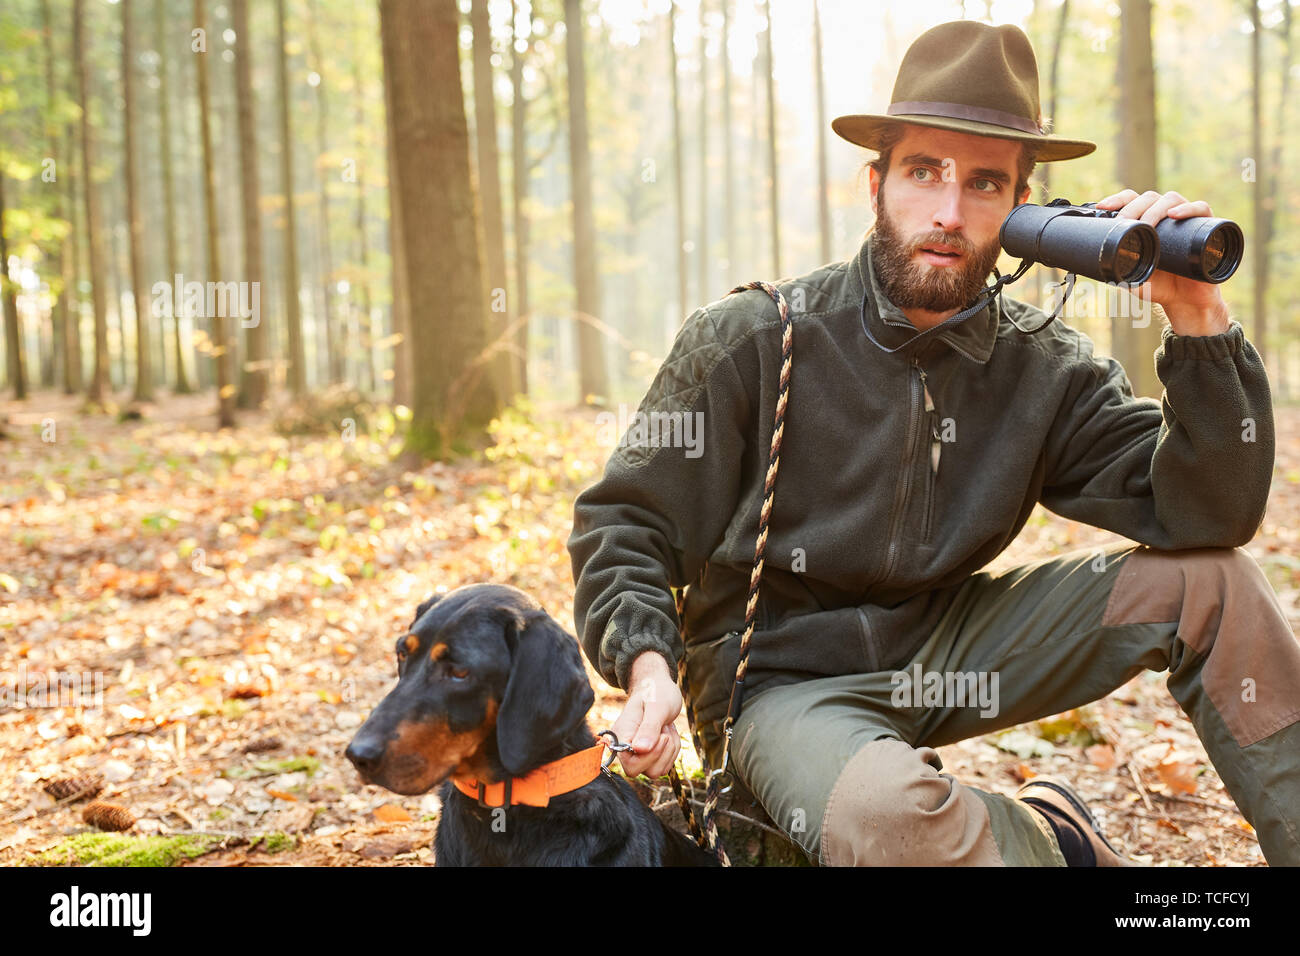 Ingénieur forestier ou un chasseur avec des jumelles et hack sur chasser la chasse dans la forêt Banque D'Images